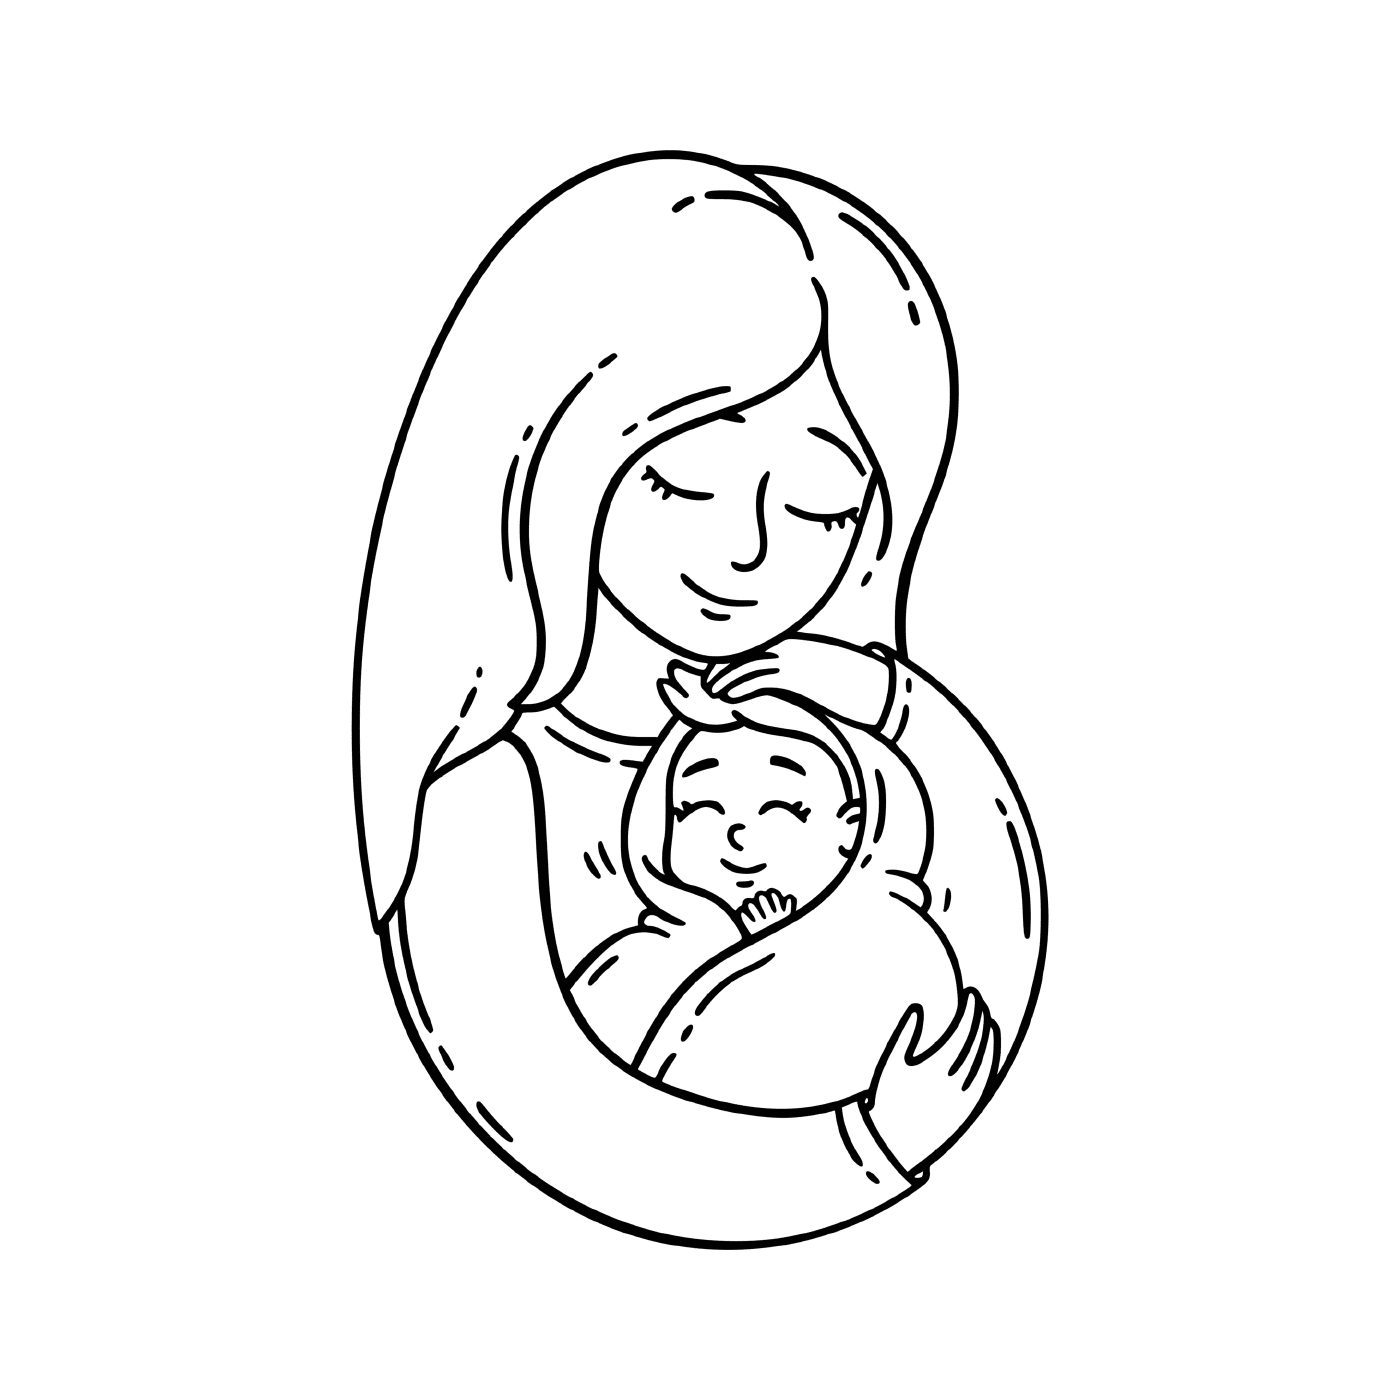   Une femme tenant un bébé 